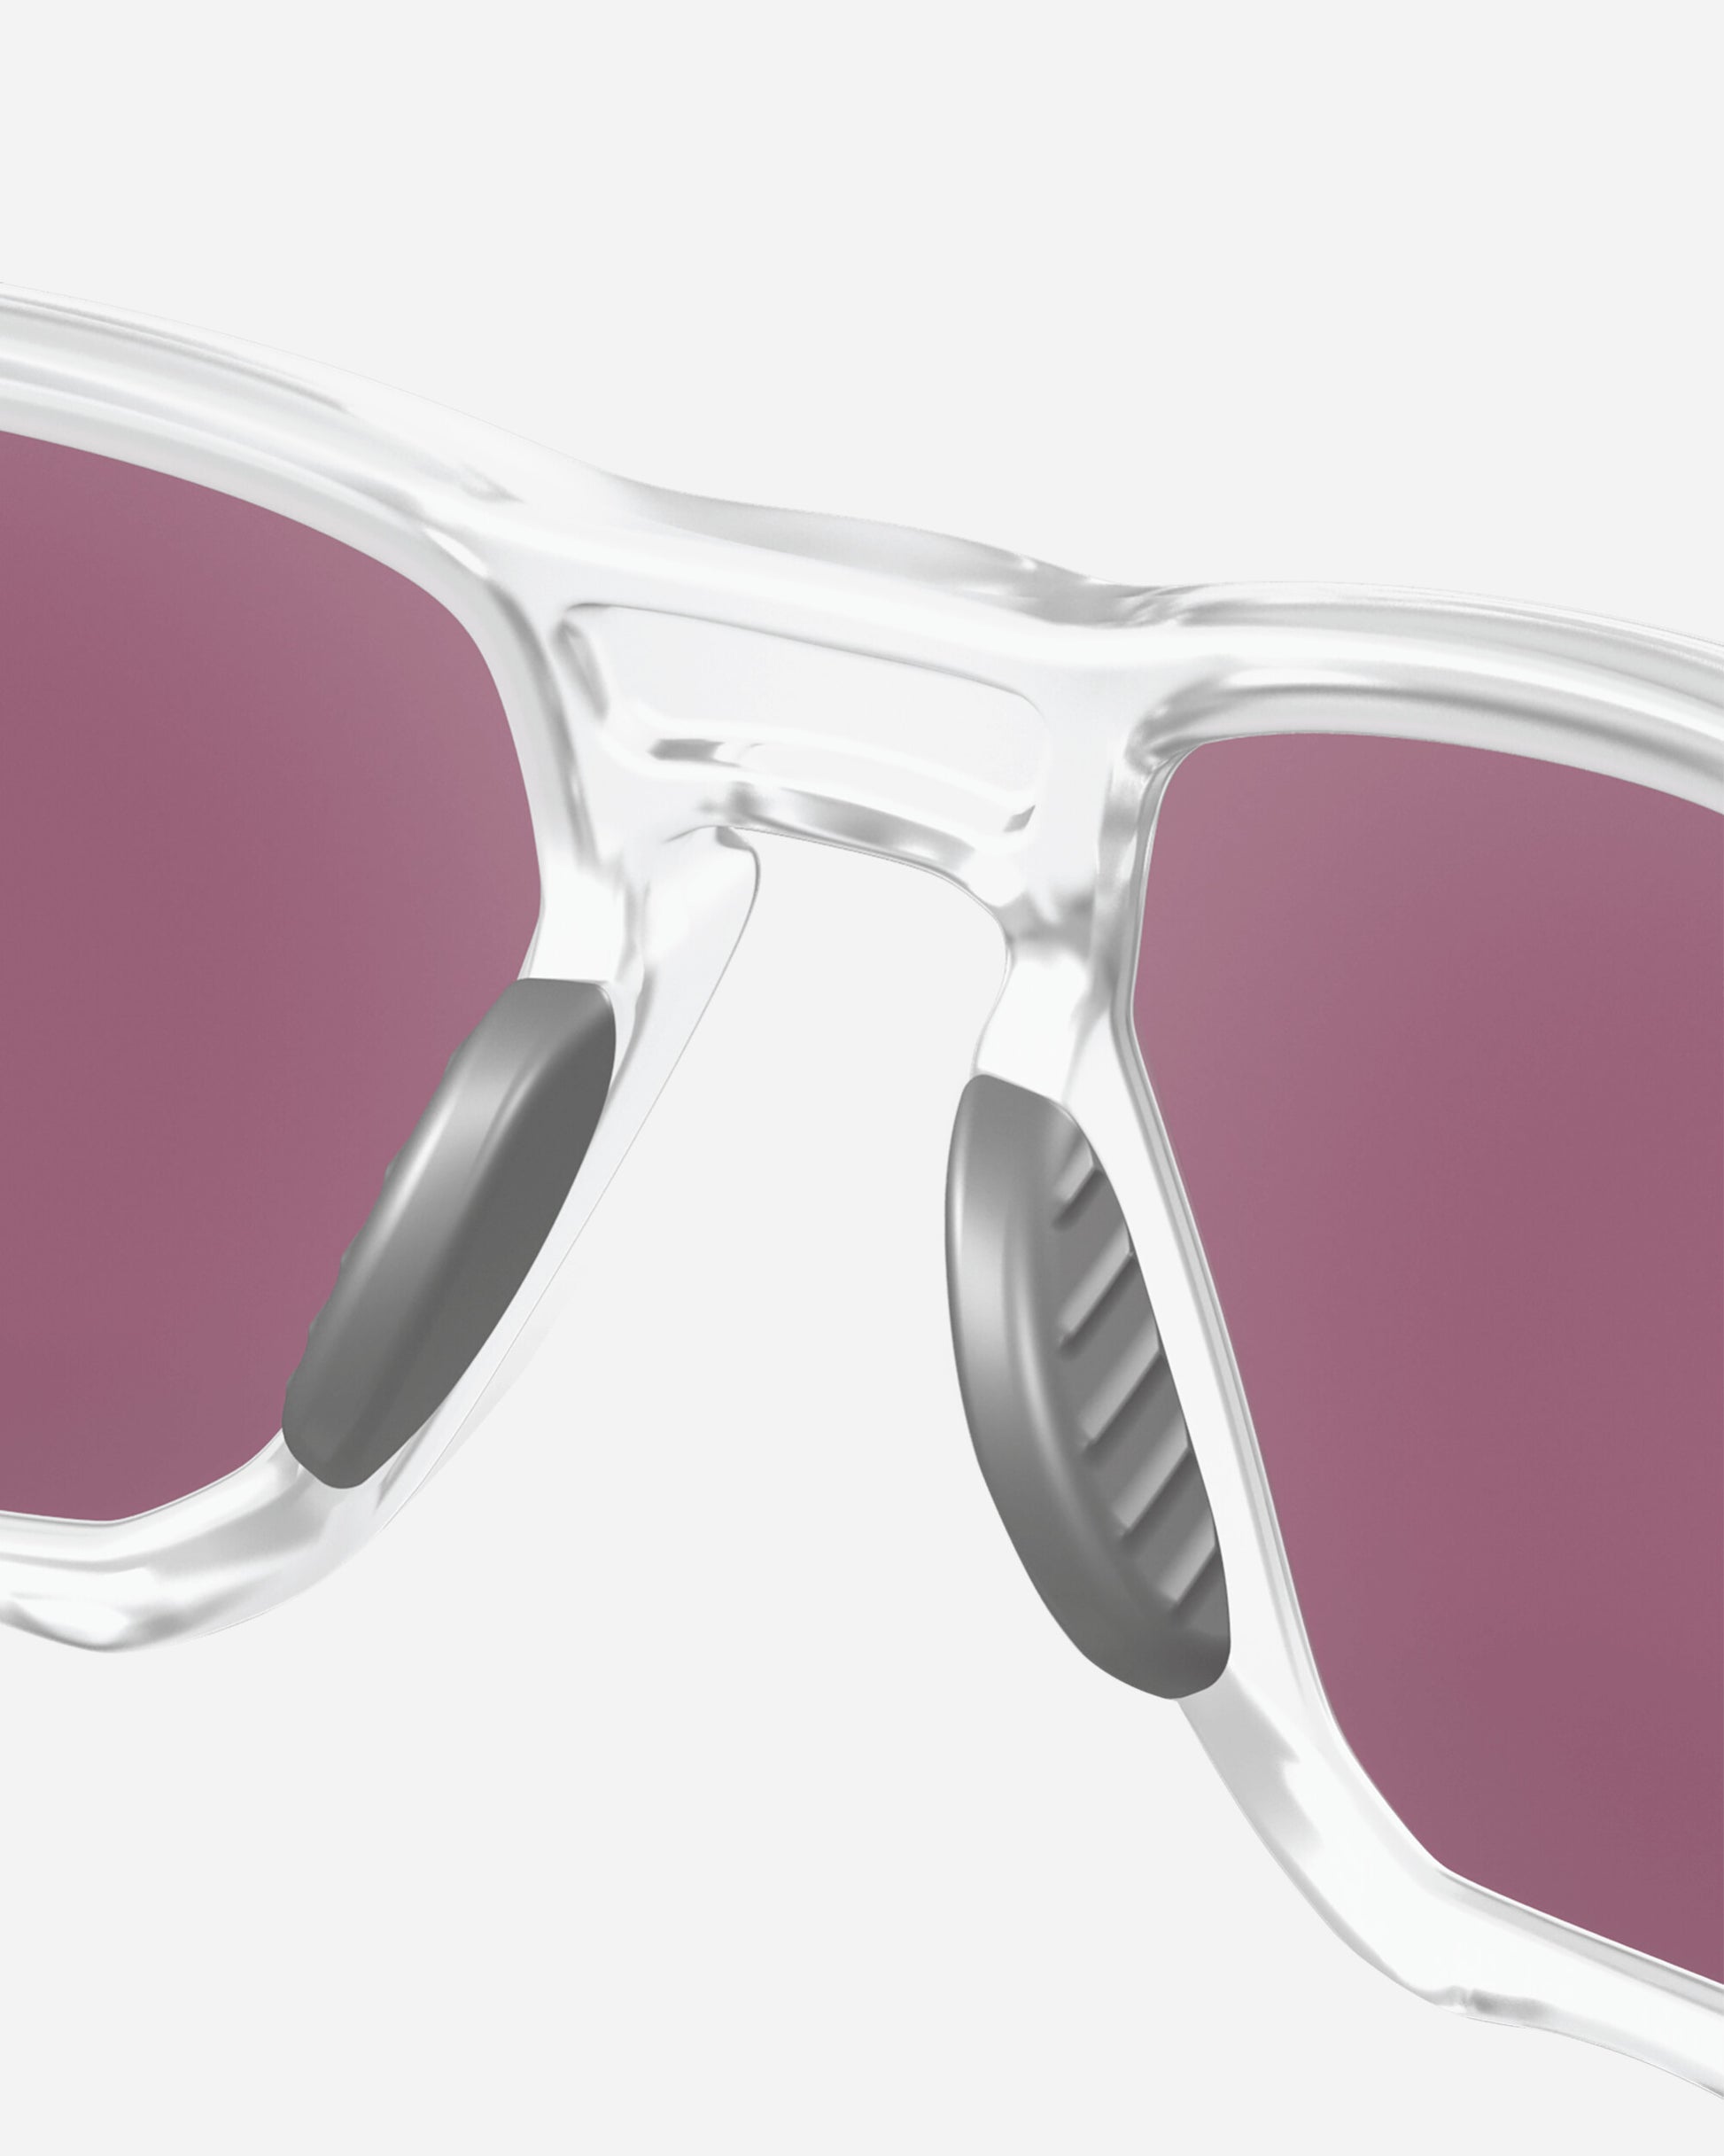 Oakley Plazma Matte Clear Eyewear Sunglasses OO9019 1659